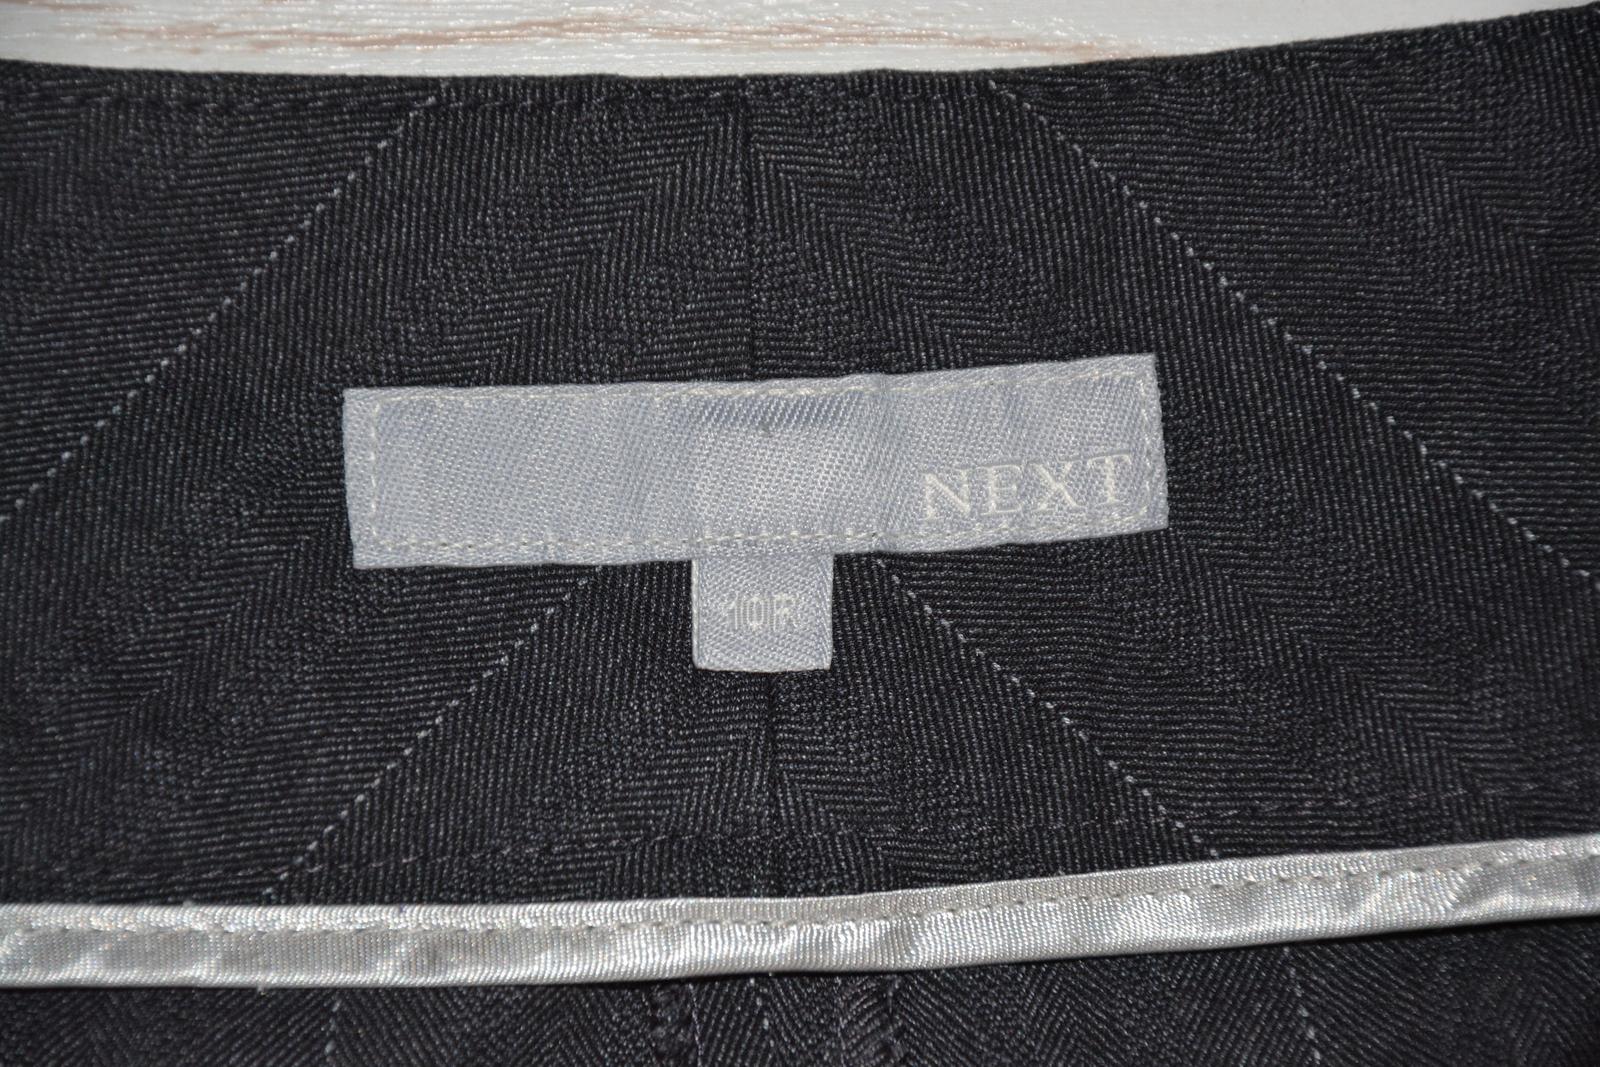 Tmavě šedé kalhoty s proužkem NEXT - Obrázek č. 4